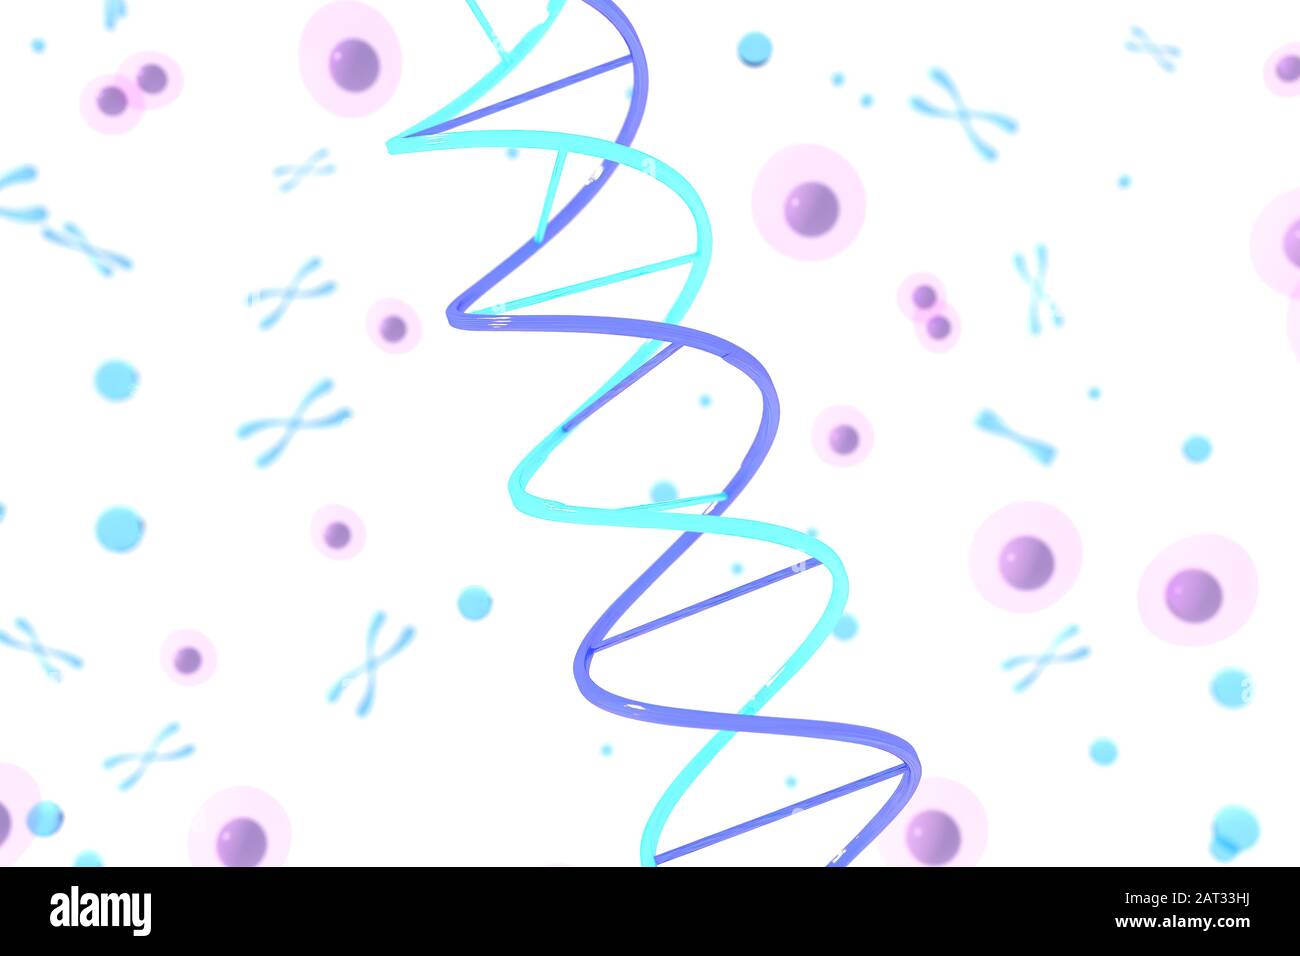 Rendu tridimensionnel de la structure de l'ADN (acide désoxyribonucléique), illustration tridimensionnelle. Banque D'Images